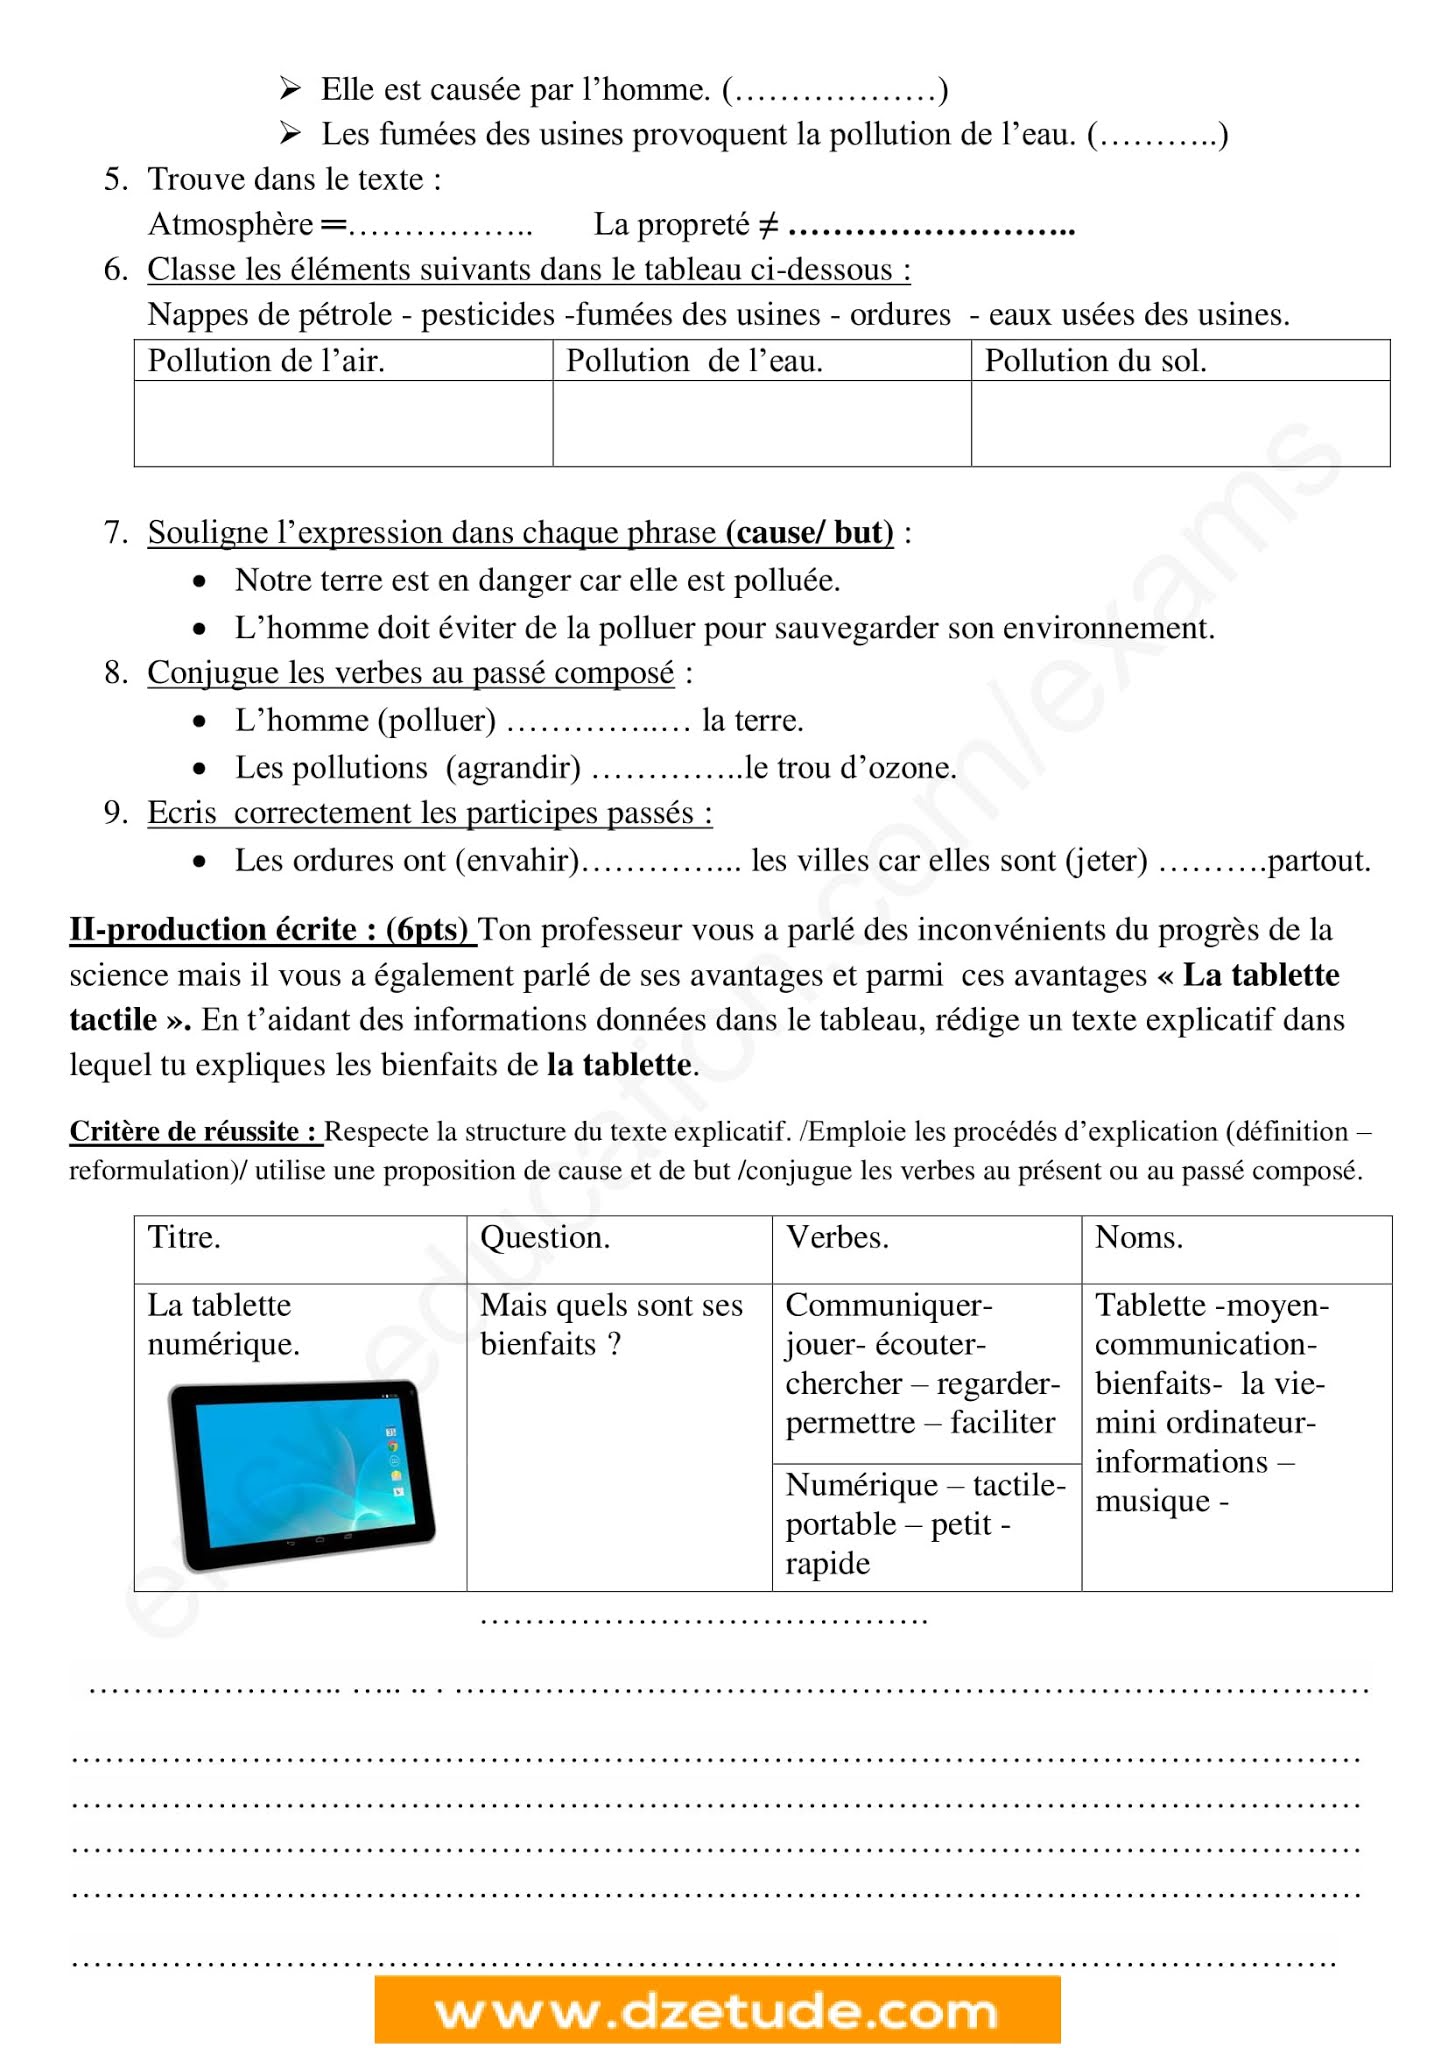 إختبار اللغة الفرنسية الفصل الثاني للسنة الأولى متوسط - الجيل الثاني نموذج 8